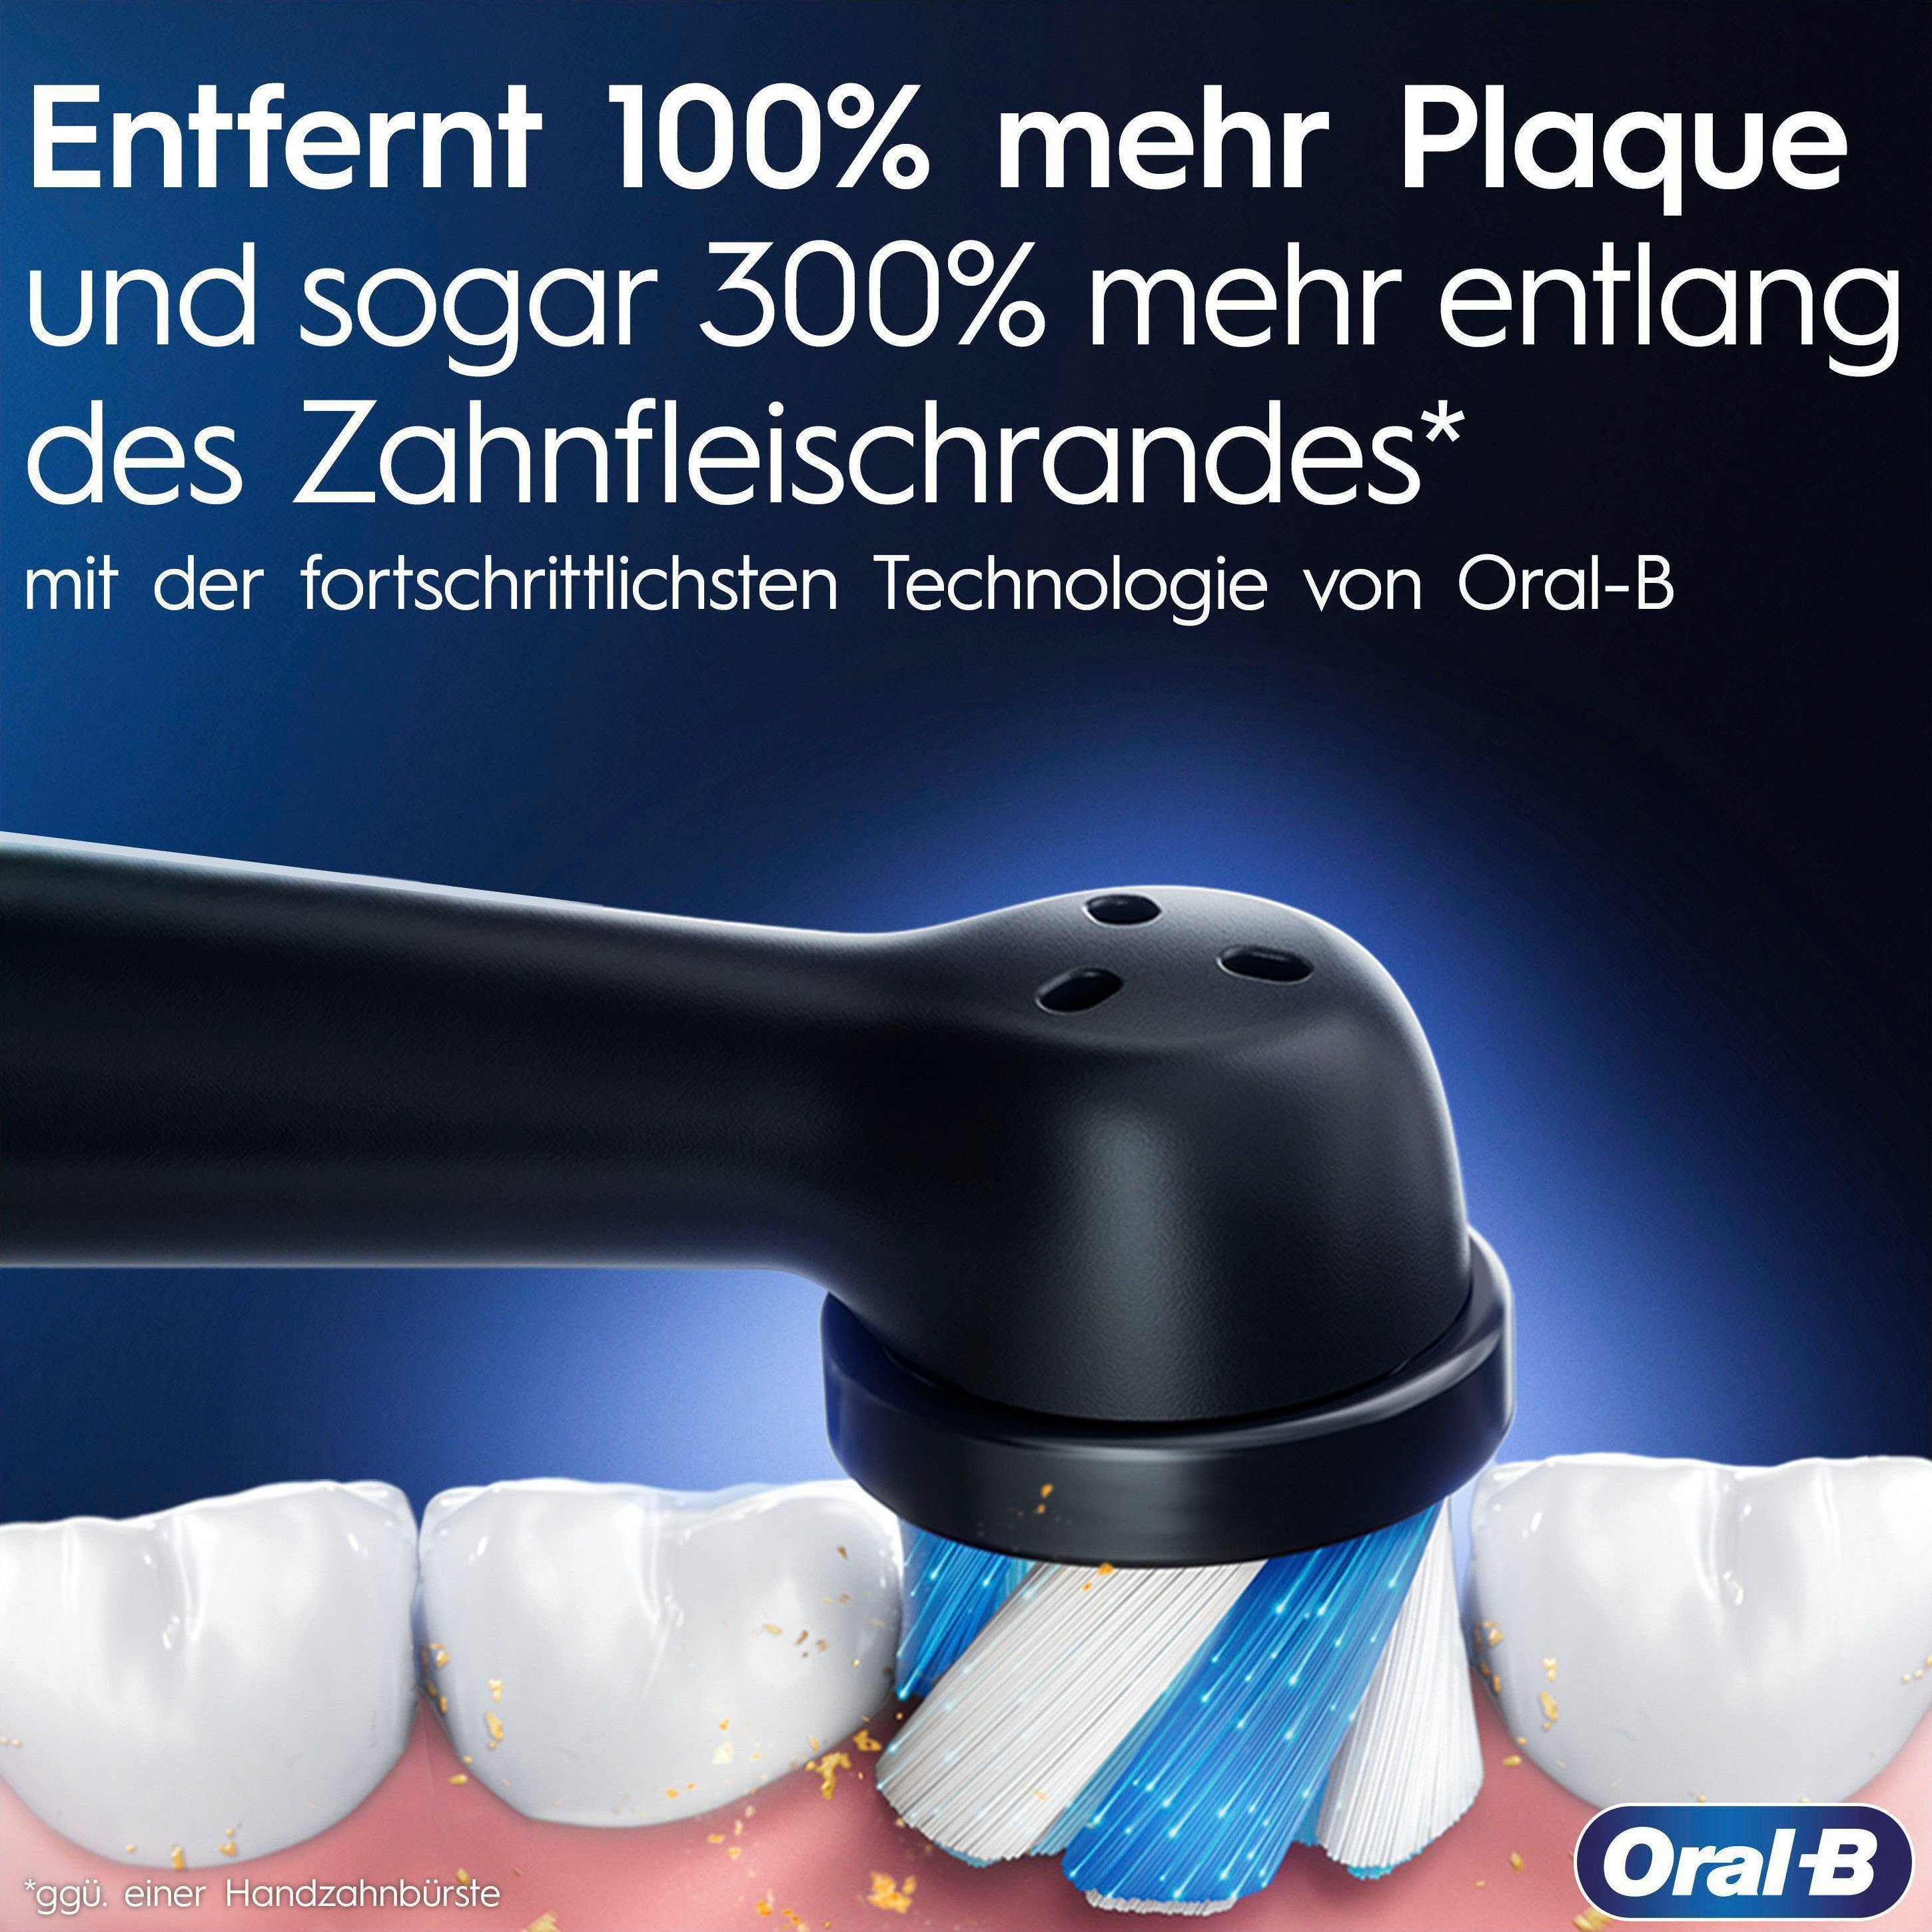 Oral-B Elektrische Zahnbürste iO mit 2 Magnet-Technologie, Lade-Reiseetui & 7 Aufsteckbürsten: Rose Farbdisplay Quartz Putzmodi, St., 9